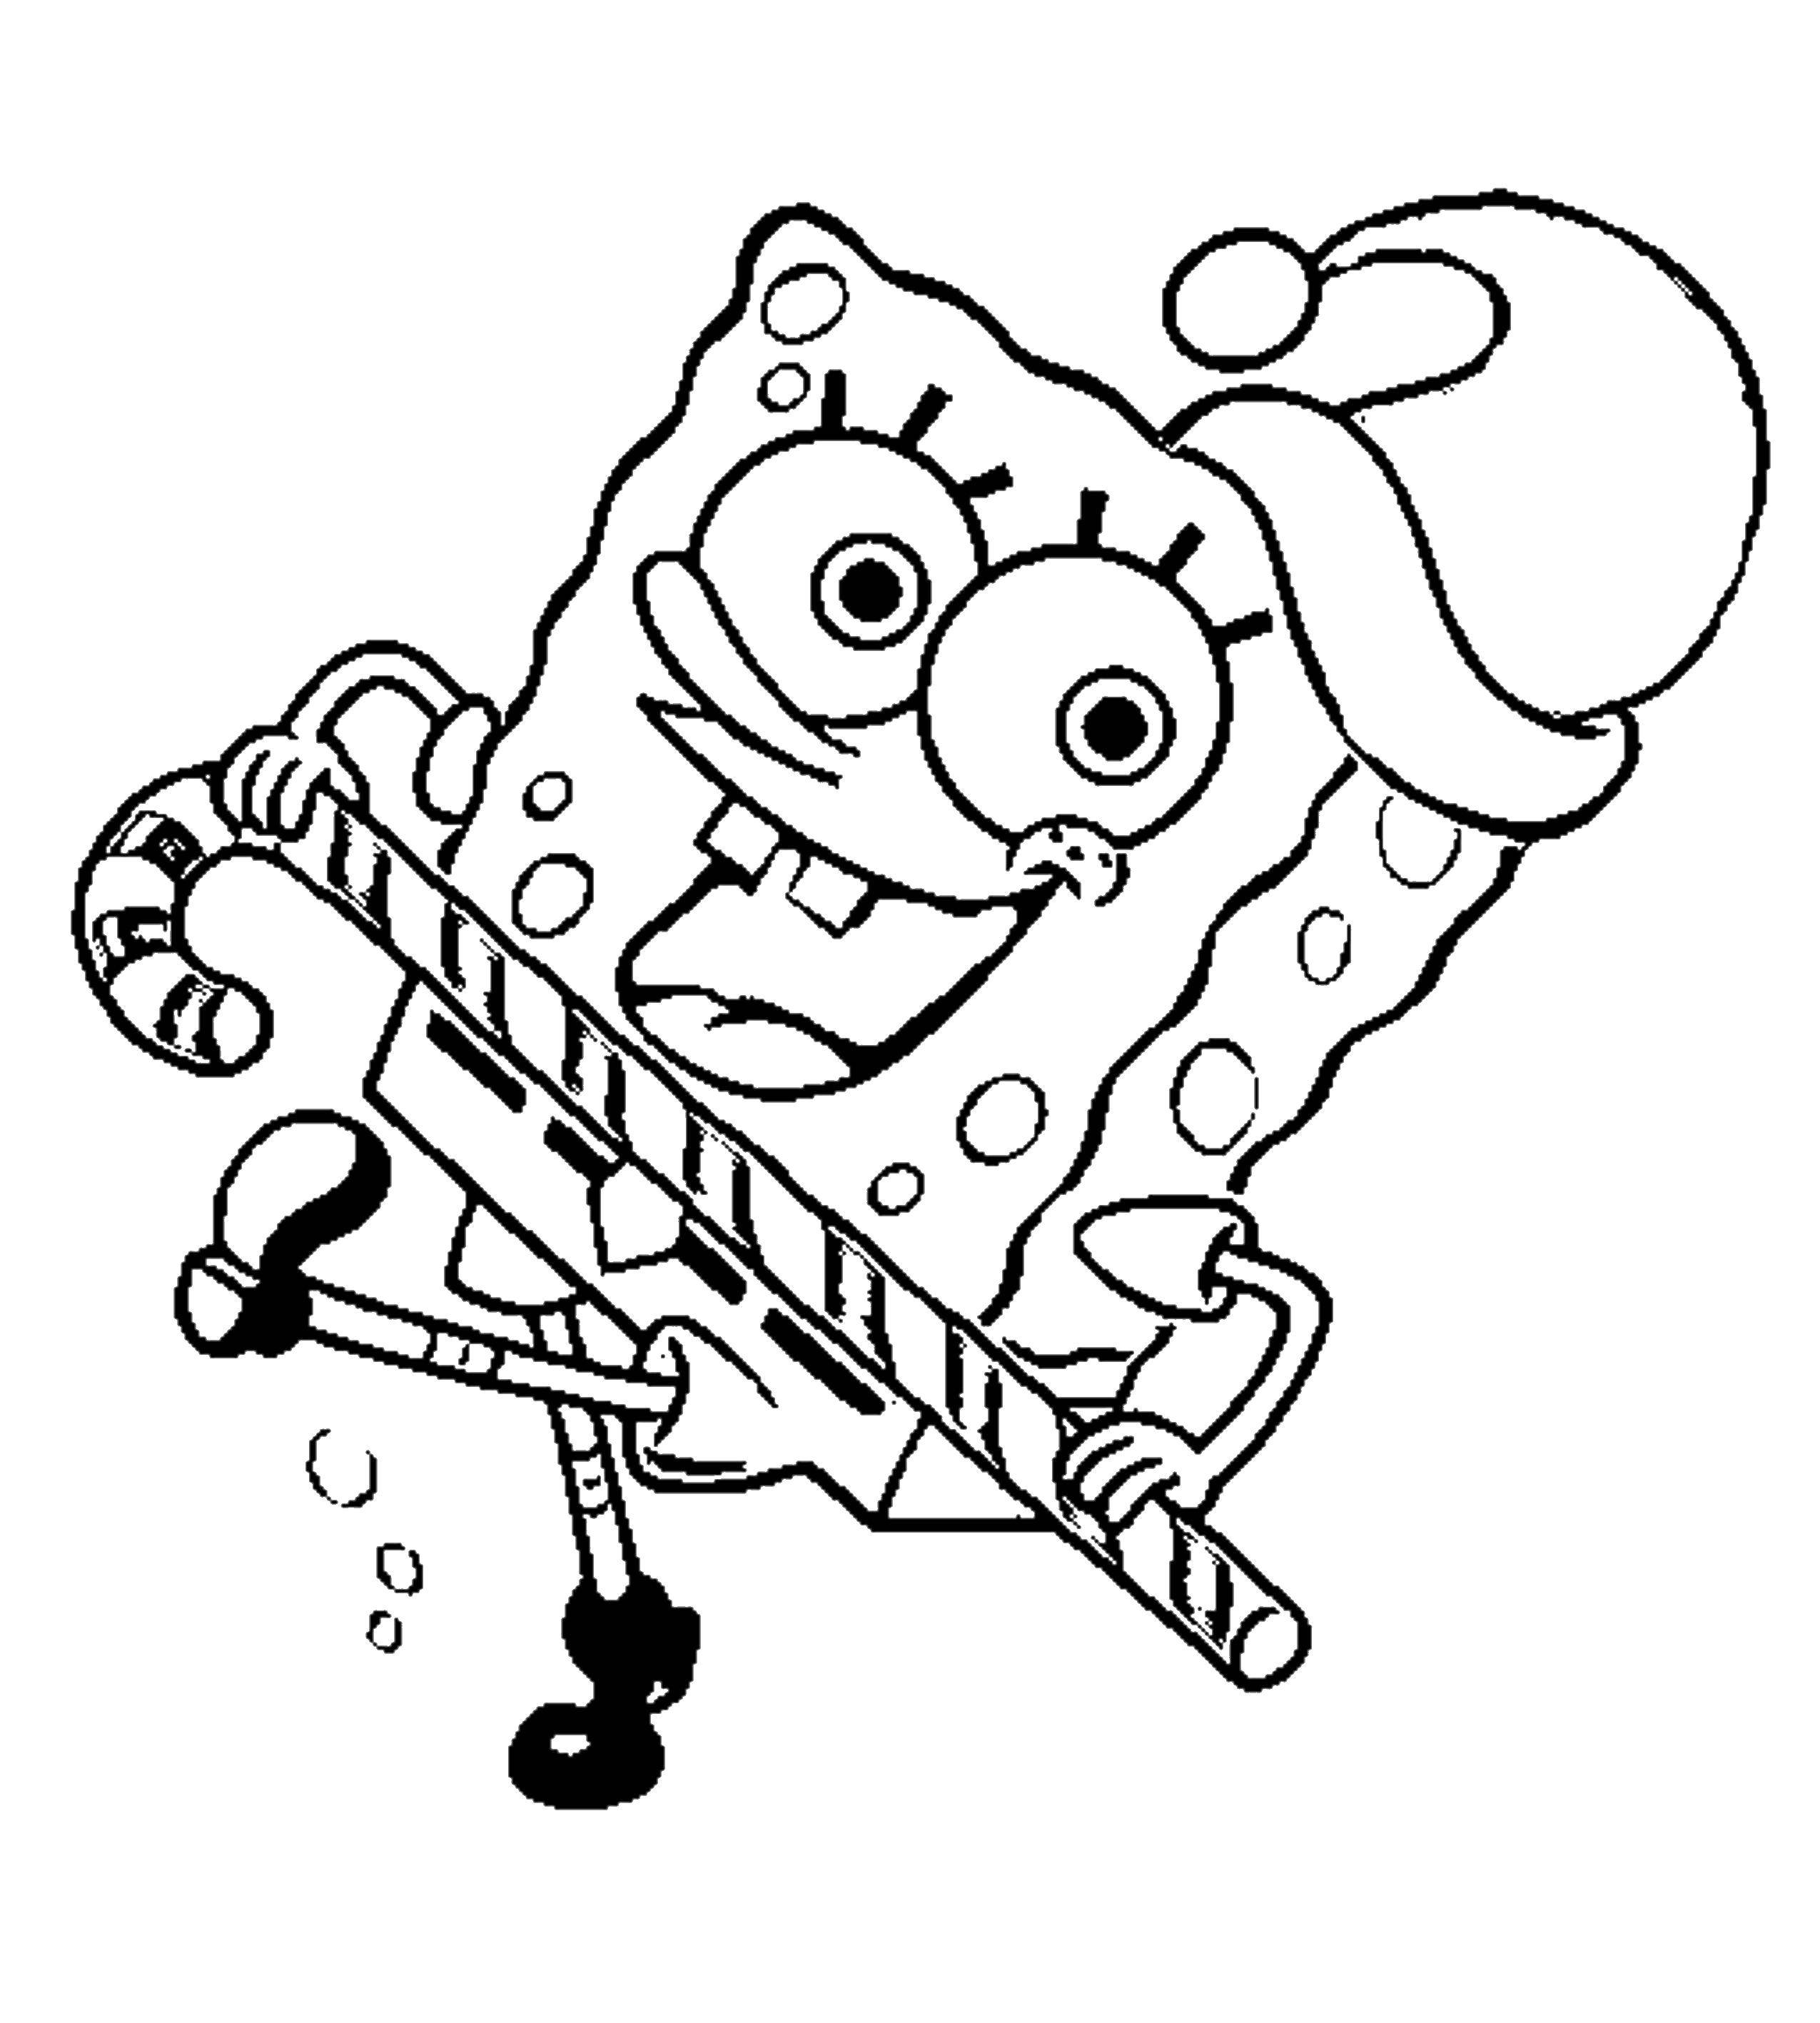 Coloring Christmas spongebob. Category Spongebob. Tags:  spongebob, Christmas.